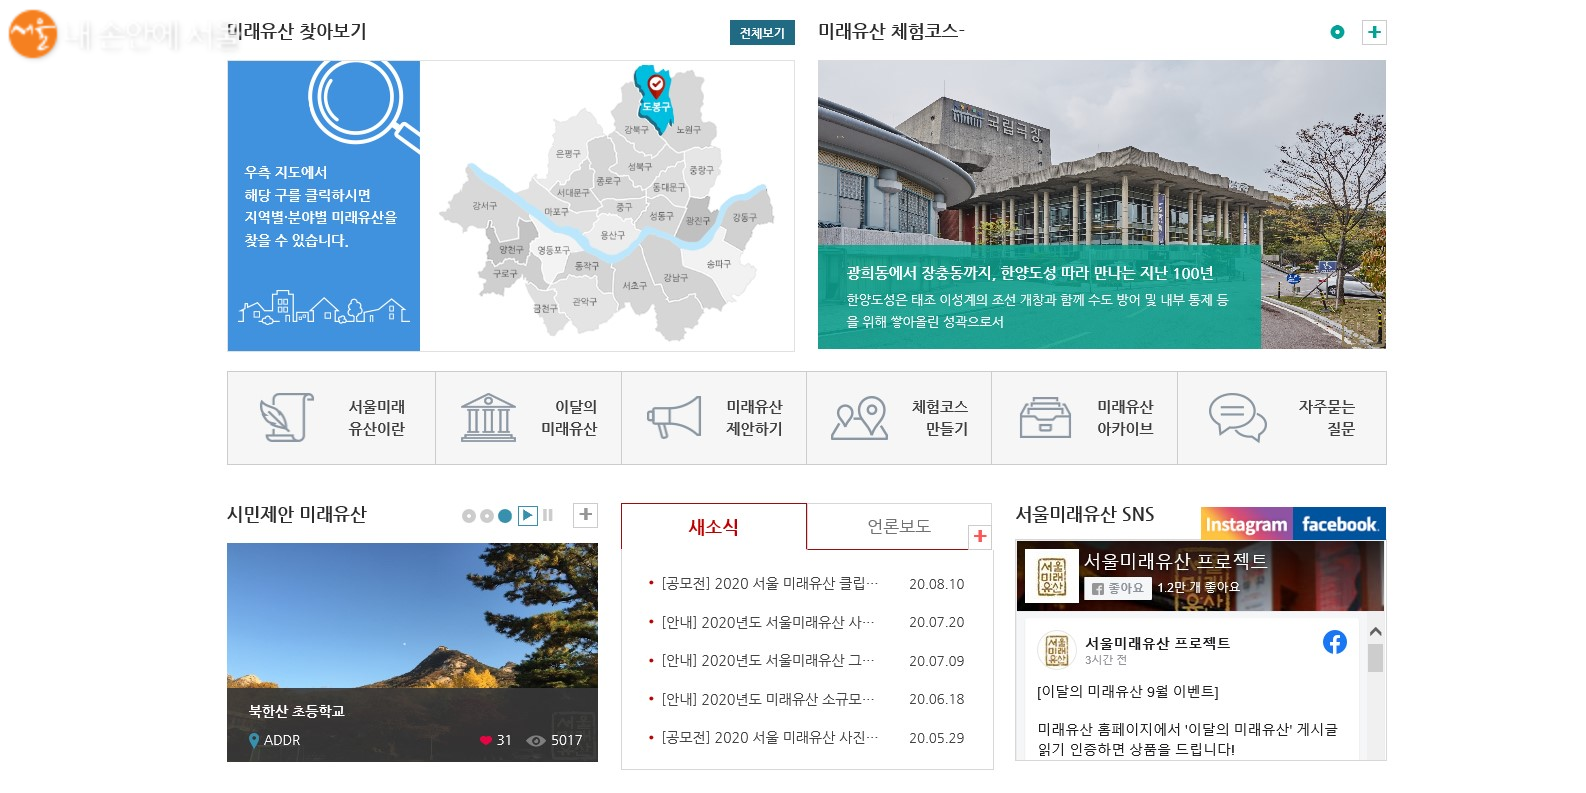 서울미래유산 홈페이지의 메인 화면 하단. 미래유산에 대한 소개와 안내, 체험프로그램 신청 등의 안내가 나온다. 